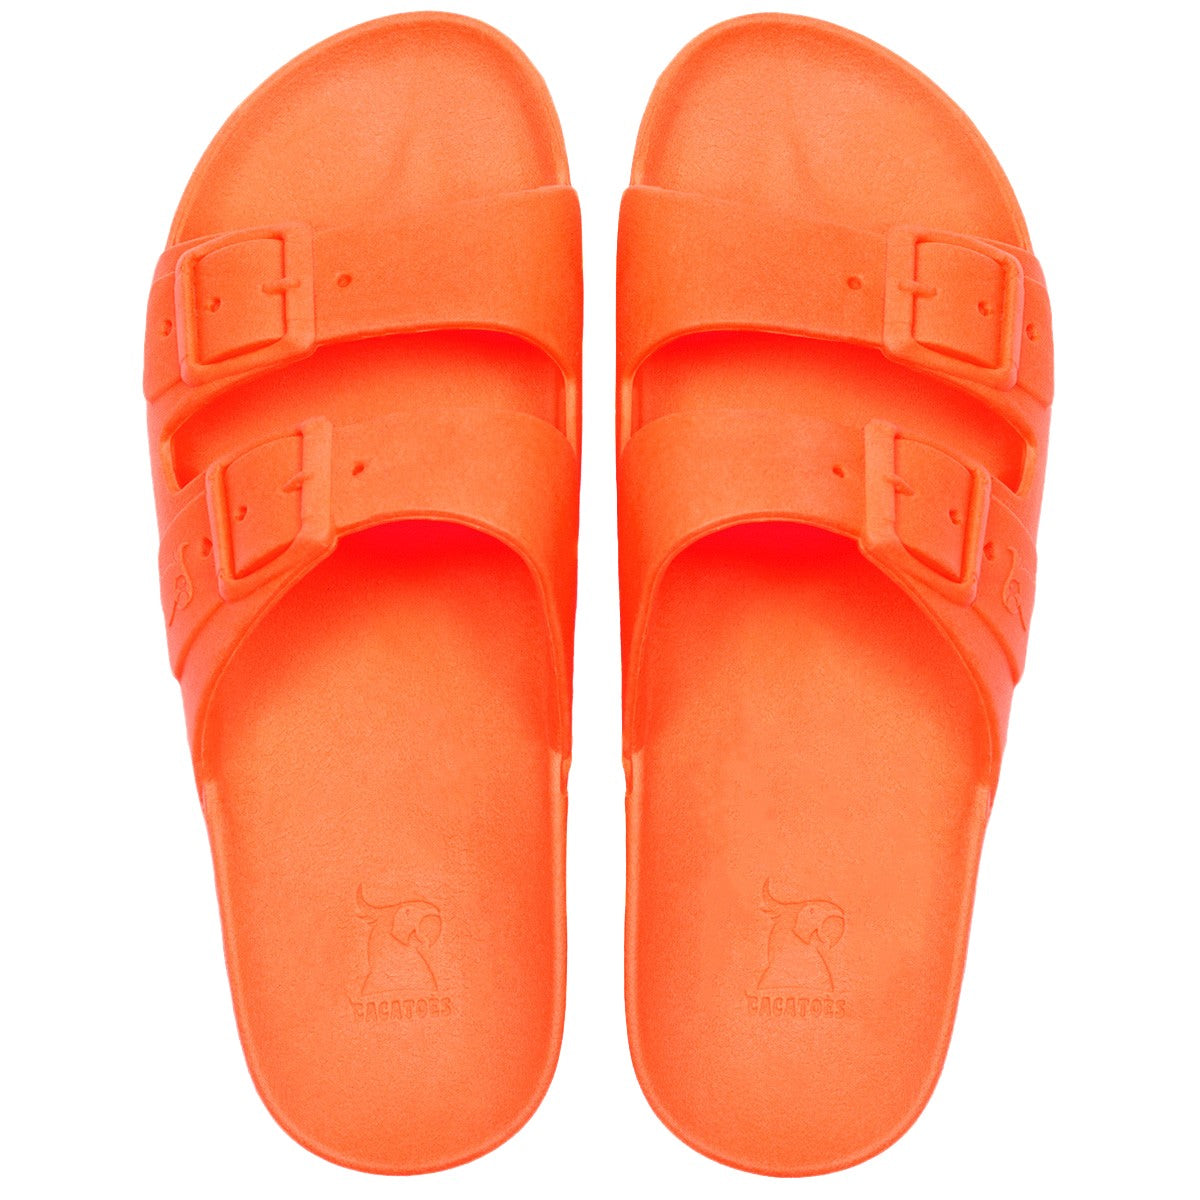 Bahia Sandals in Orange Fluo